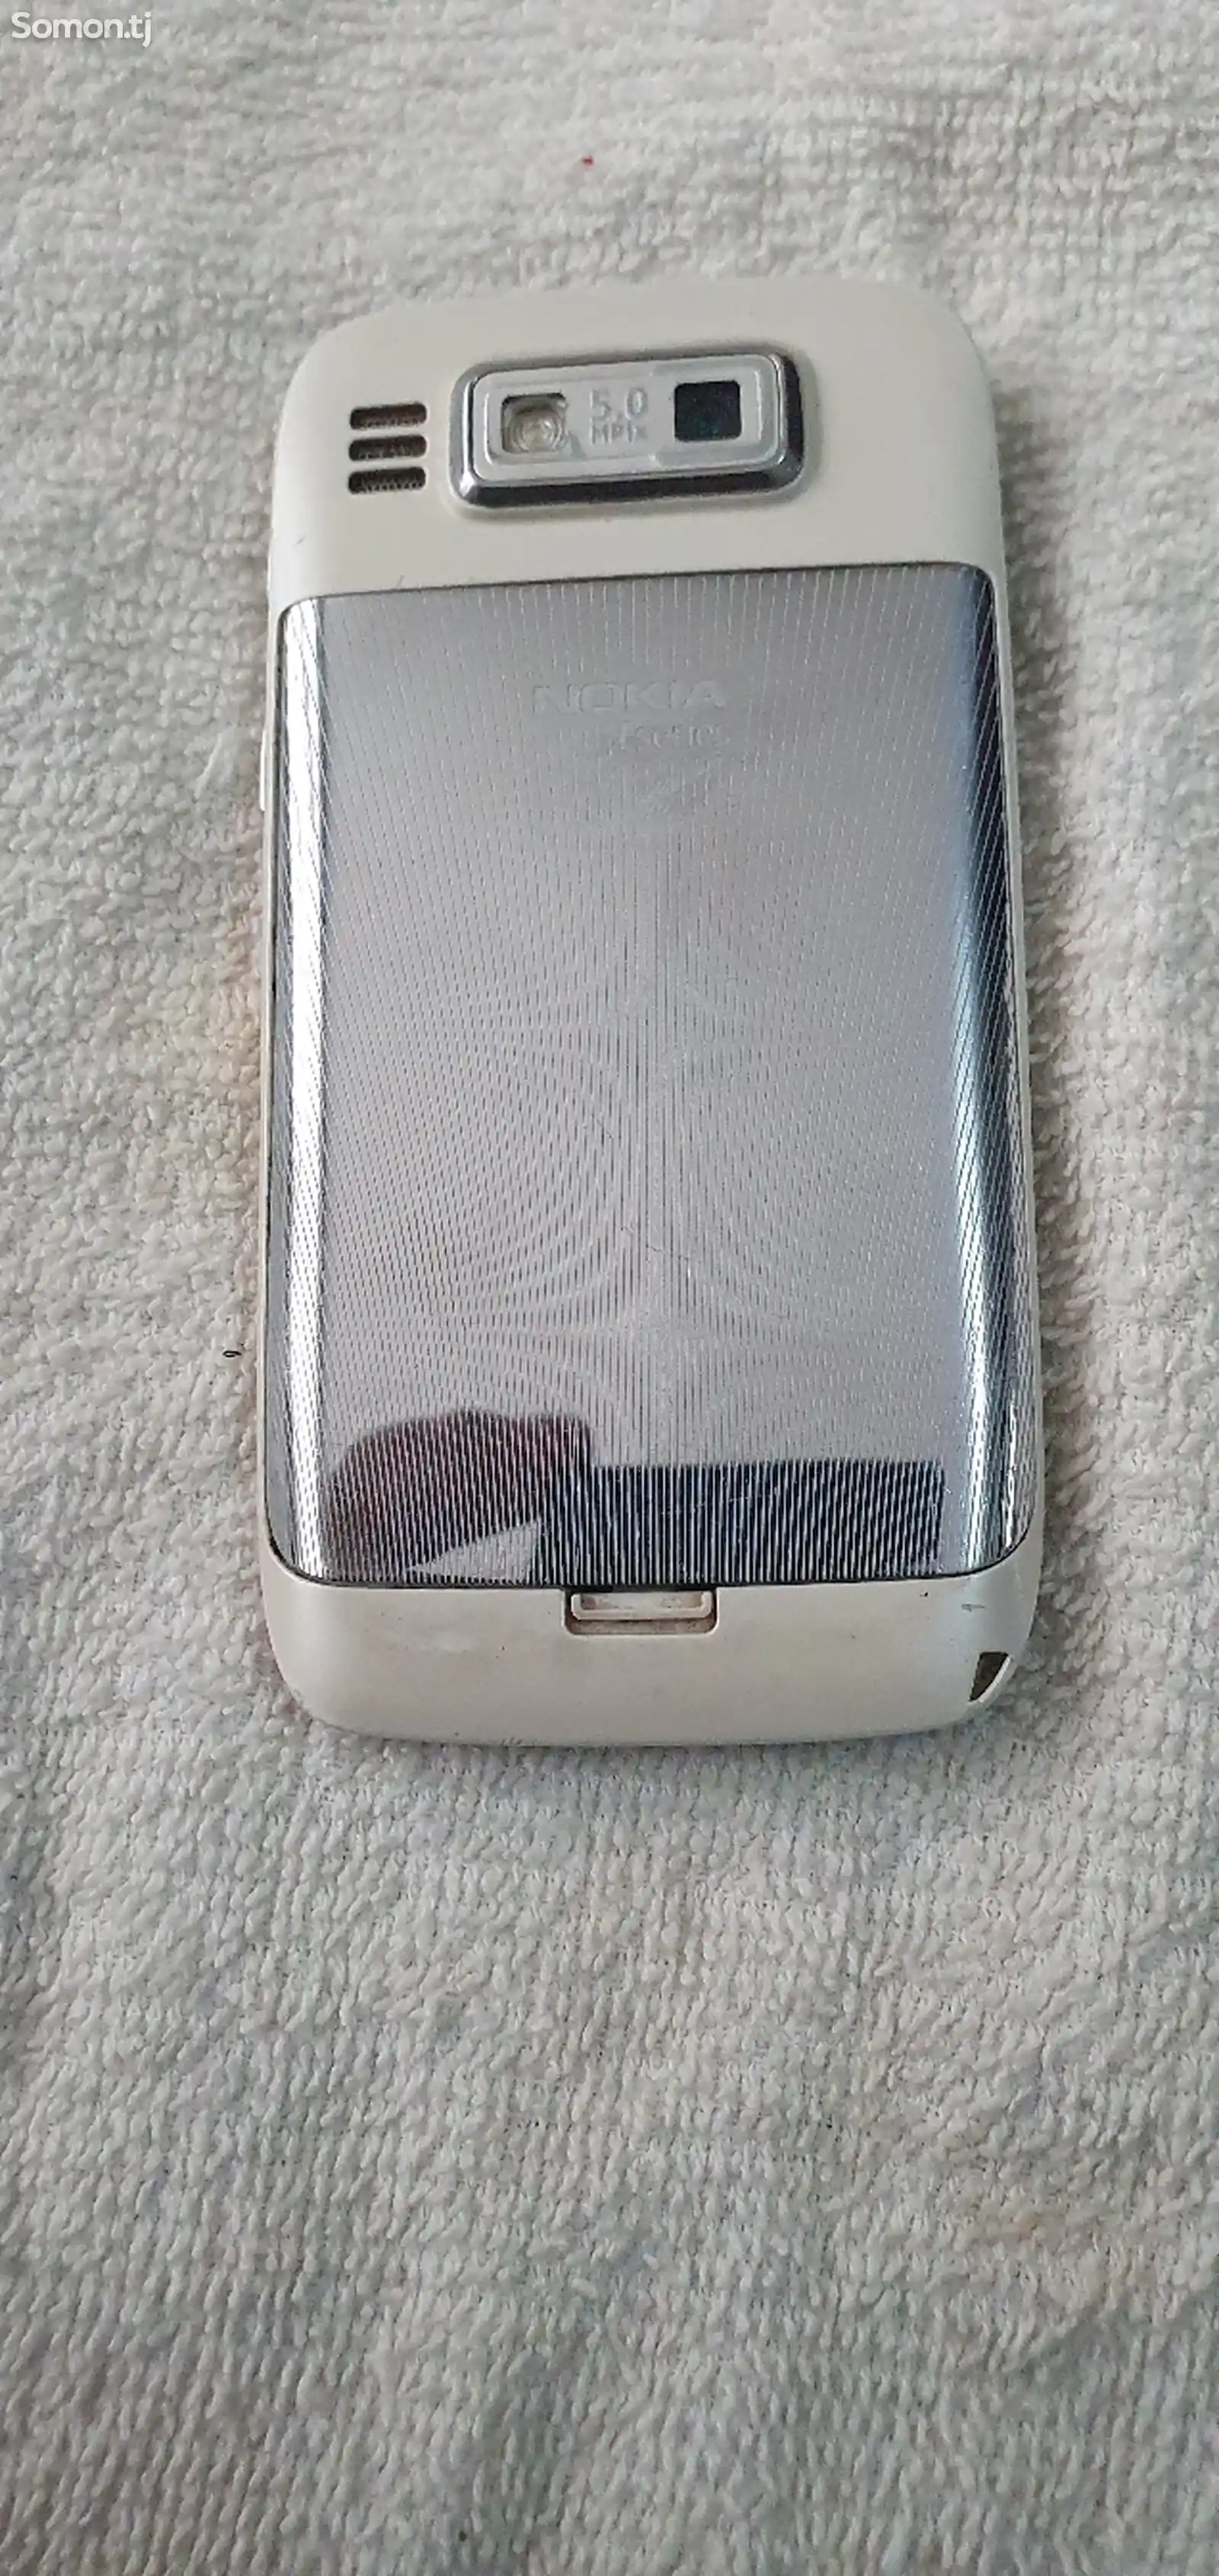 Nokia N72-4